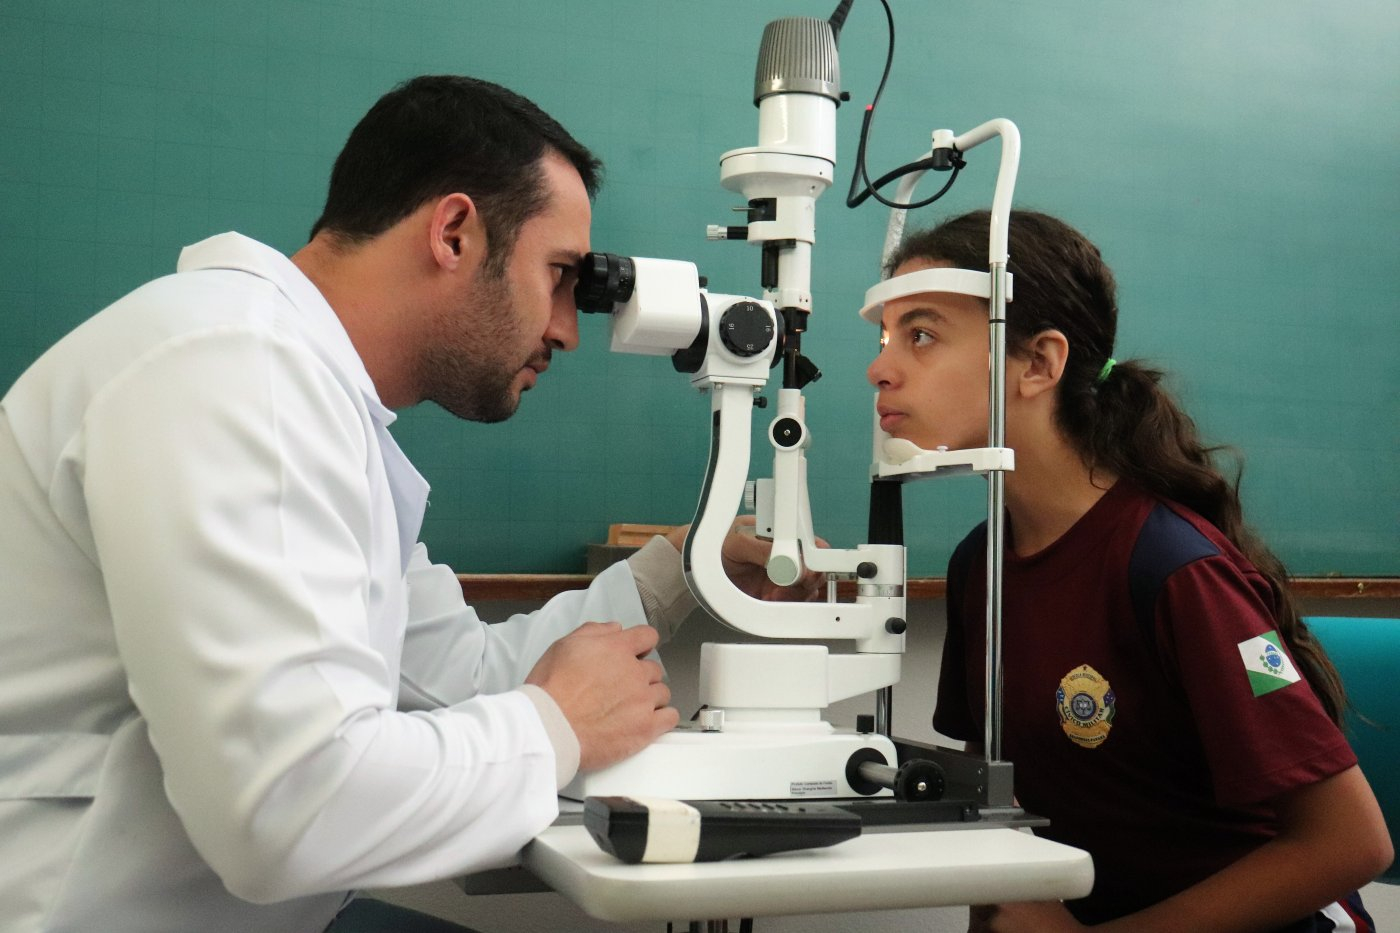 Prefeitura inicia 2º mutirão de oftalmologia para atender alunos da Rede Municipal